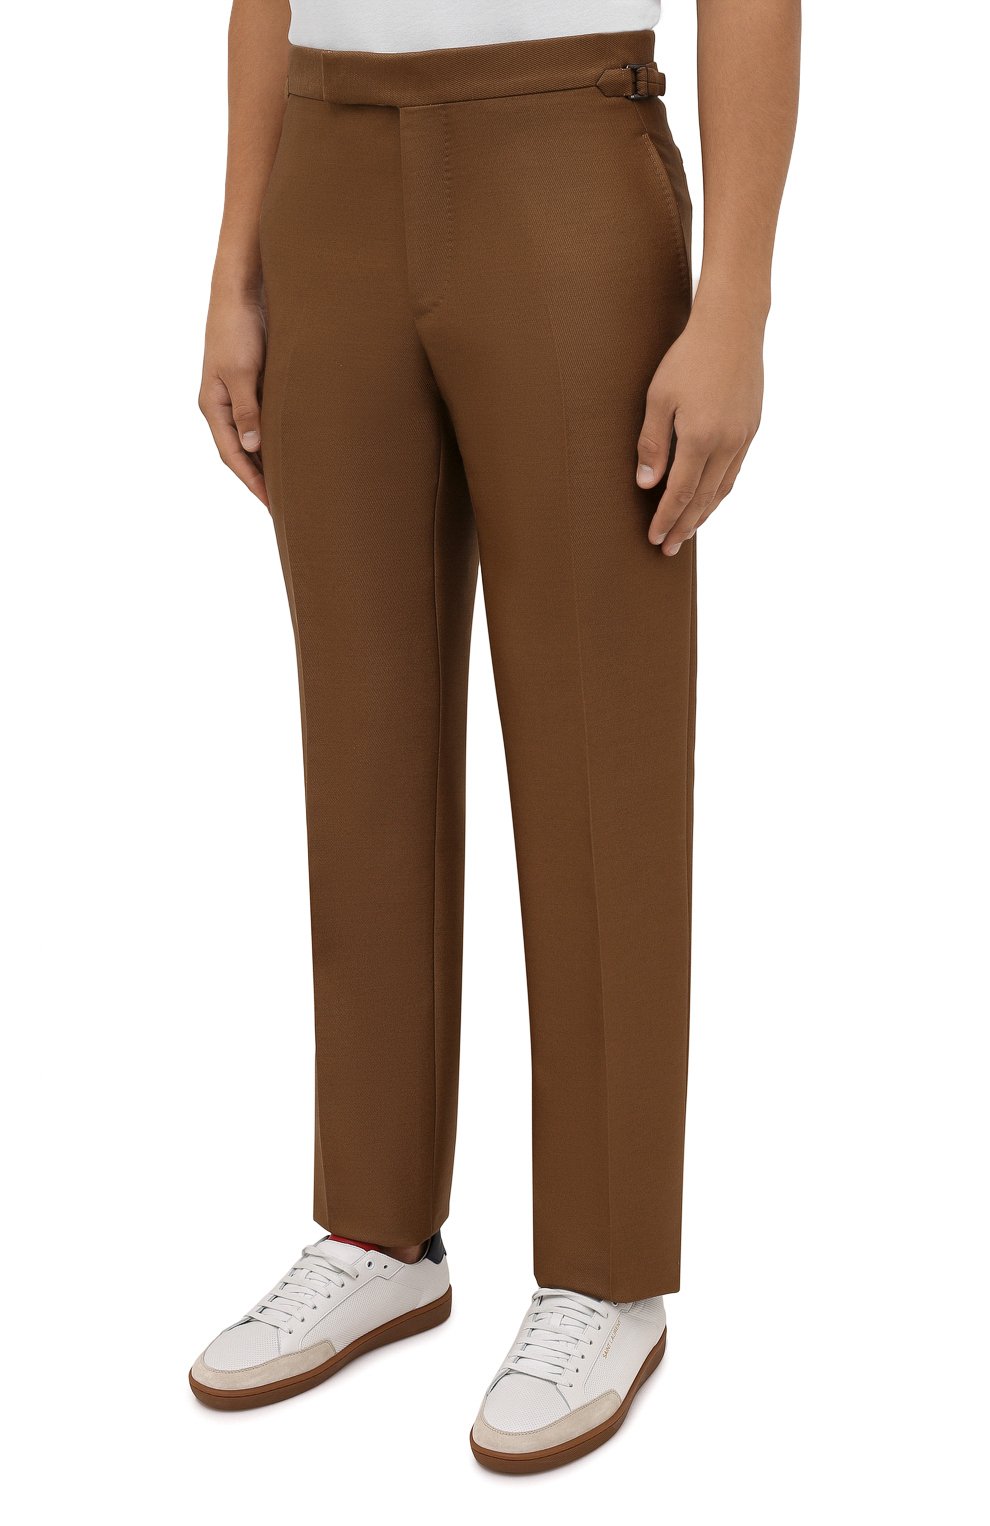 Мужские брюки из шерсти и вискозы TOM FORD коричневого цвета, арт. 244R24/610043 | Фото 3 (Материал внешний: Шерсть, Вискоза; Длина (брюки, джинсы): Стандартные; Случай: Повседневный; Стили: Кэжуэл)